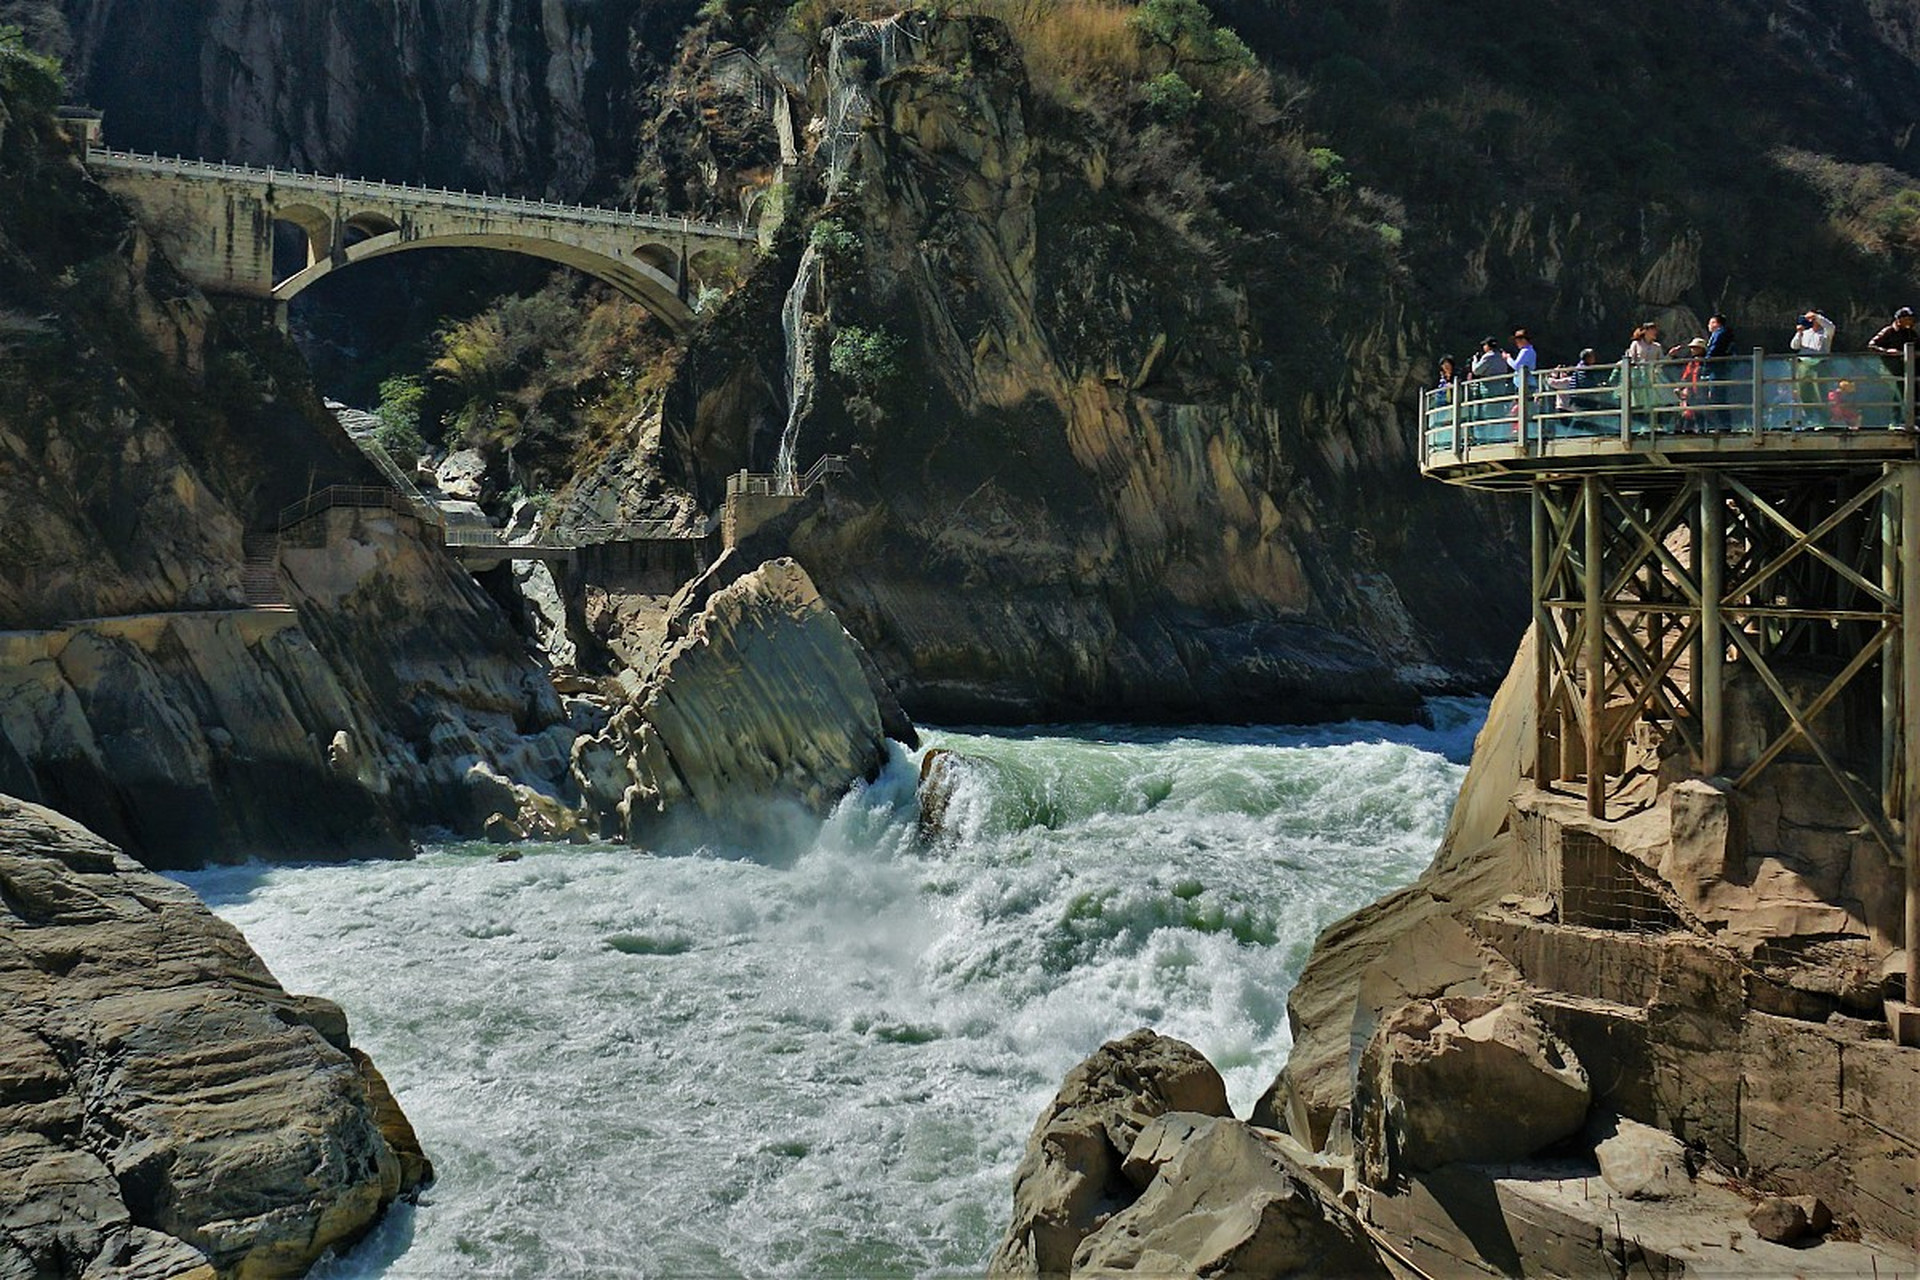 虎跳峡徒步攻略 虎跳峡位于中国云南省洱源县,是一处风景秀丽的自然